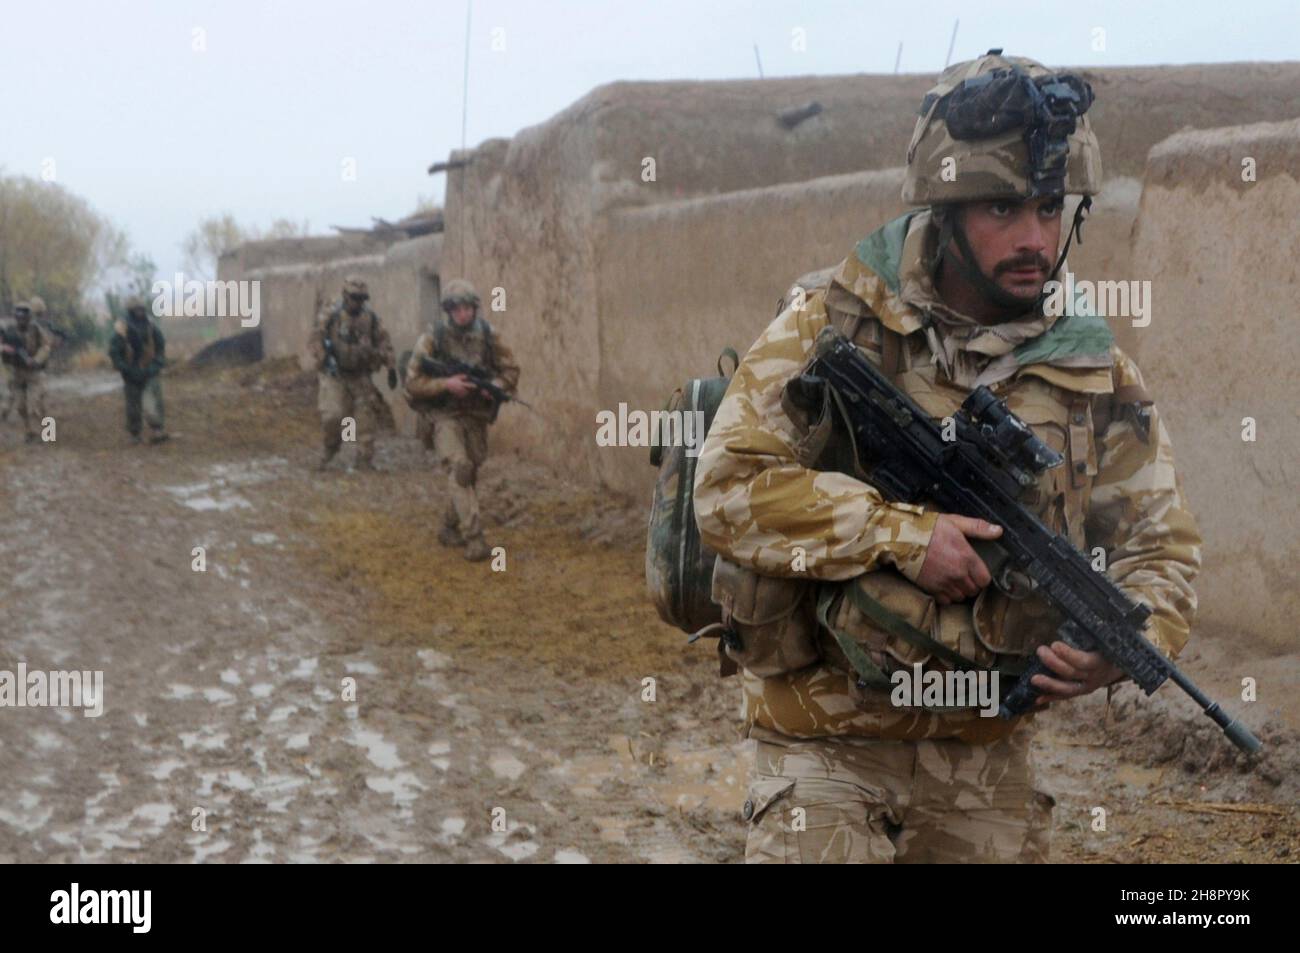 Los comandos de la Royal Marine británica patrullan durante una tormenta de lluvia durante la Operación Sond Chara, despararrando el distrito de Nad-e Ali, provincia de Helmand de los insurgentes, 29 de diciembre de 2008, en Lashkar Gah, Afganistán. Foto de stock